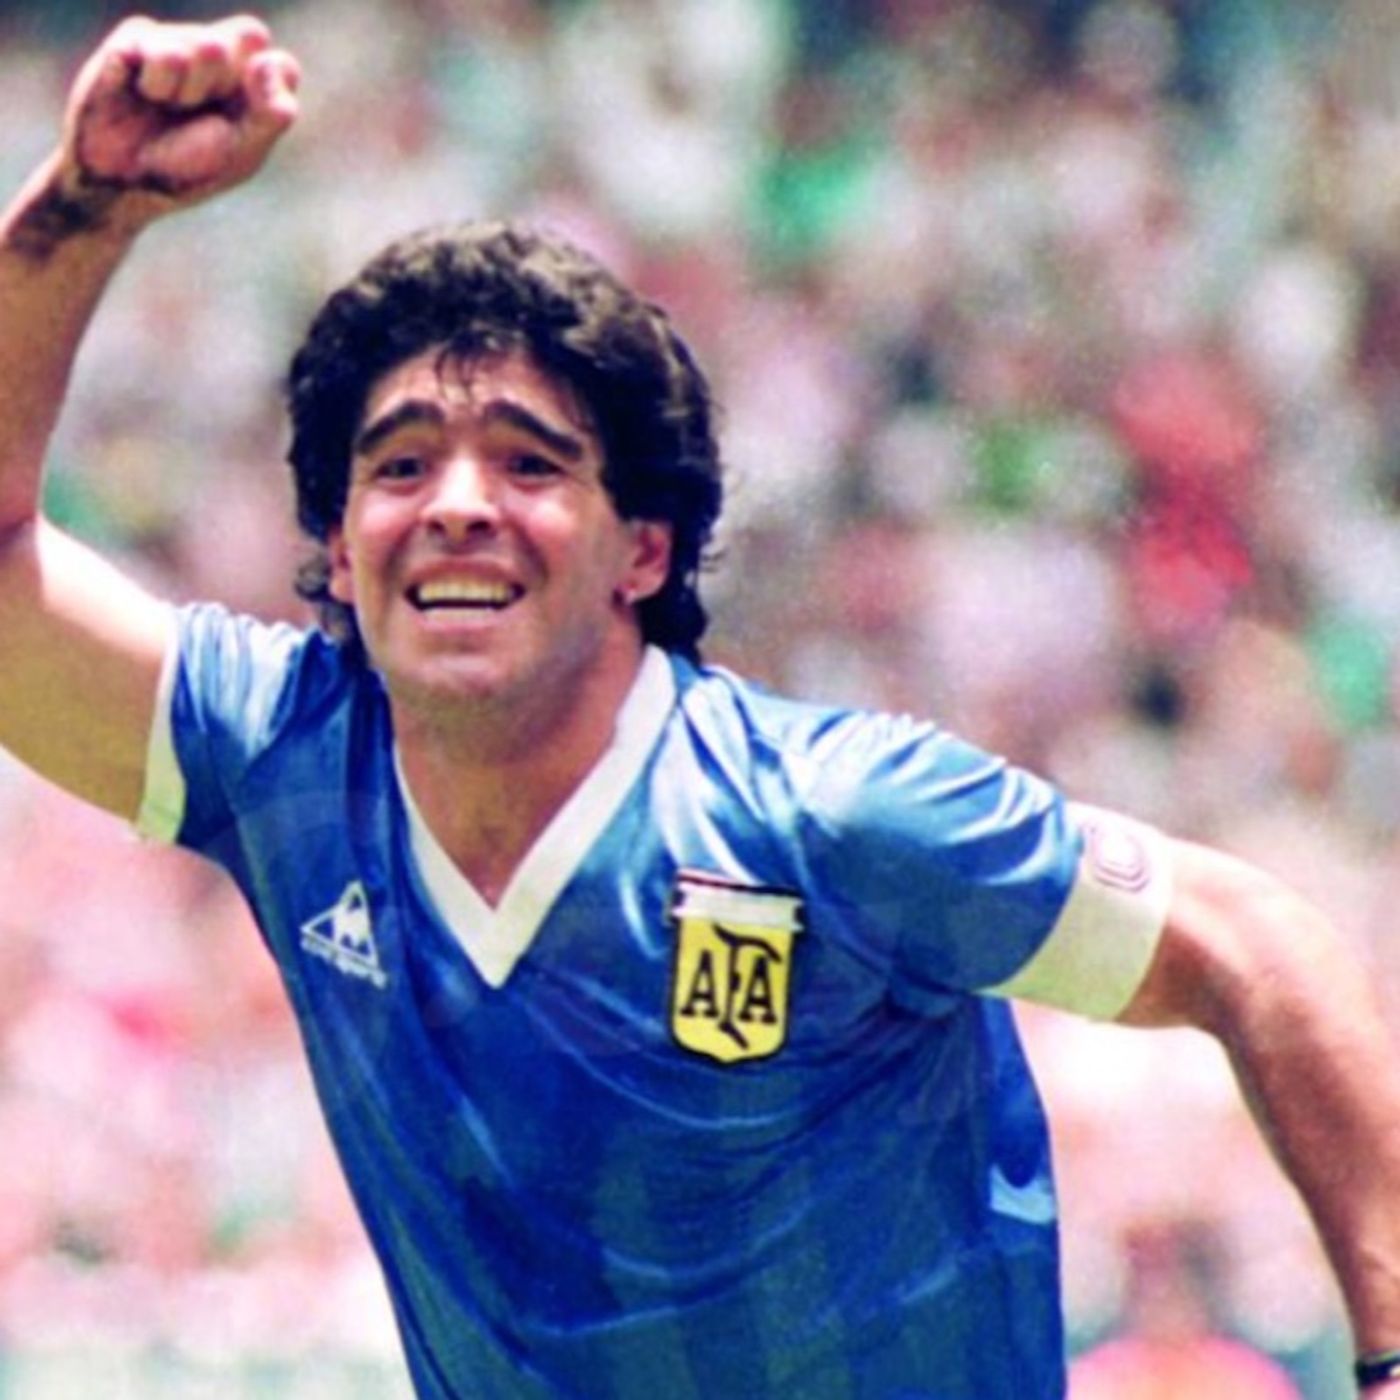 Camiseta de Maradona se subastó y alcanzó los  9 millones de dólares 4MAY